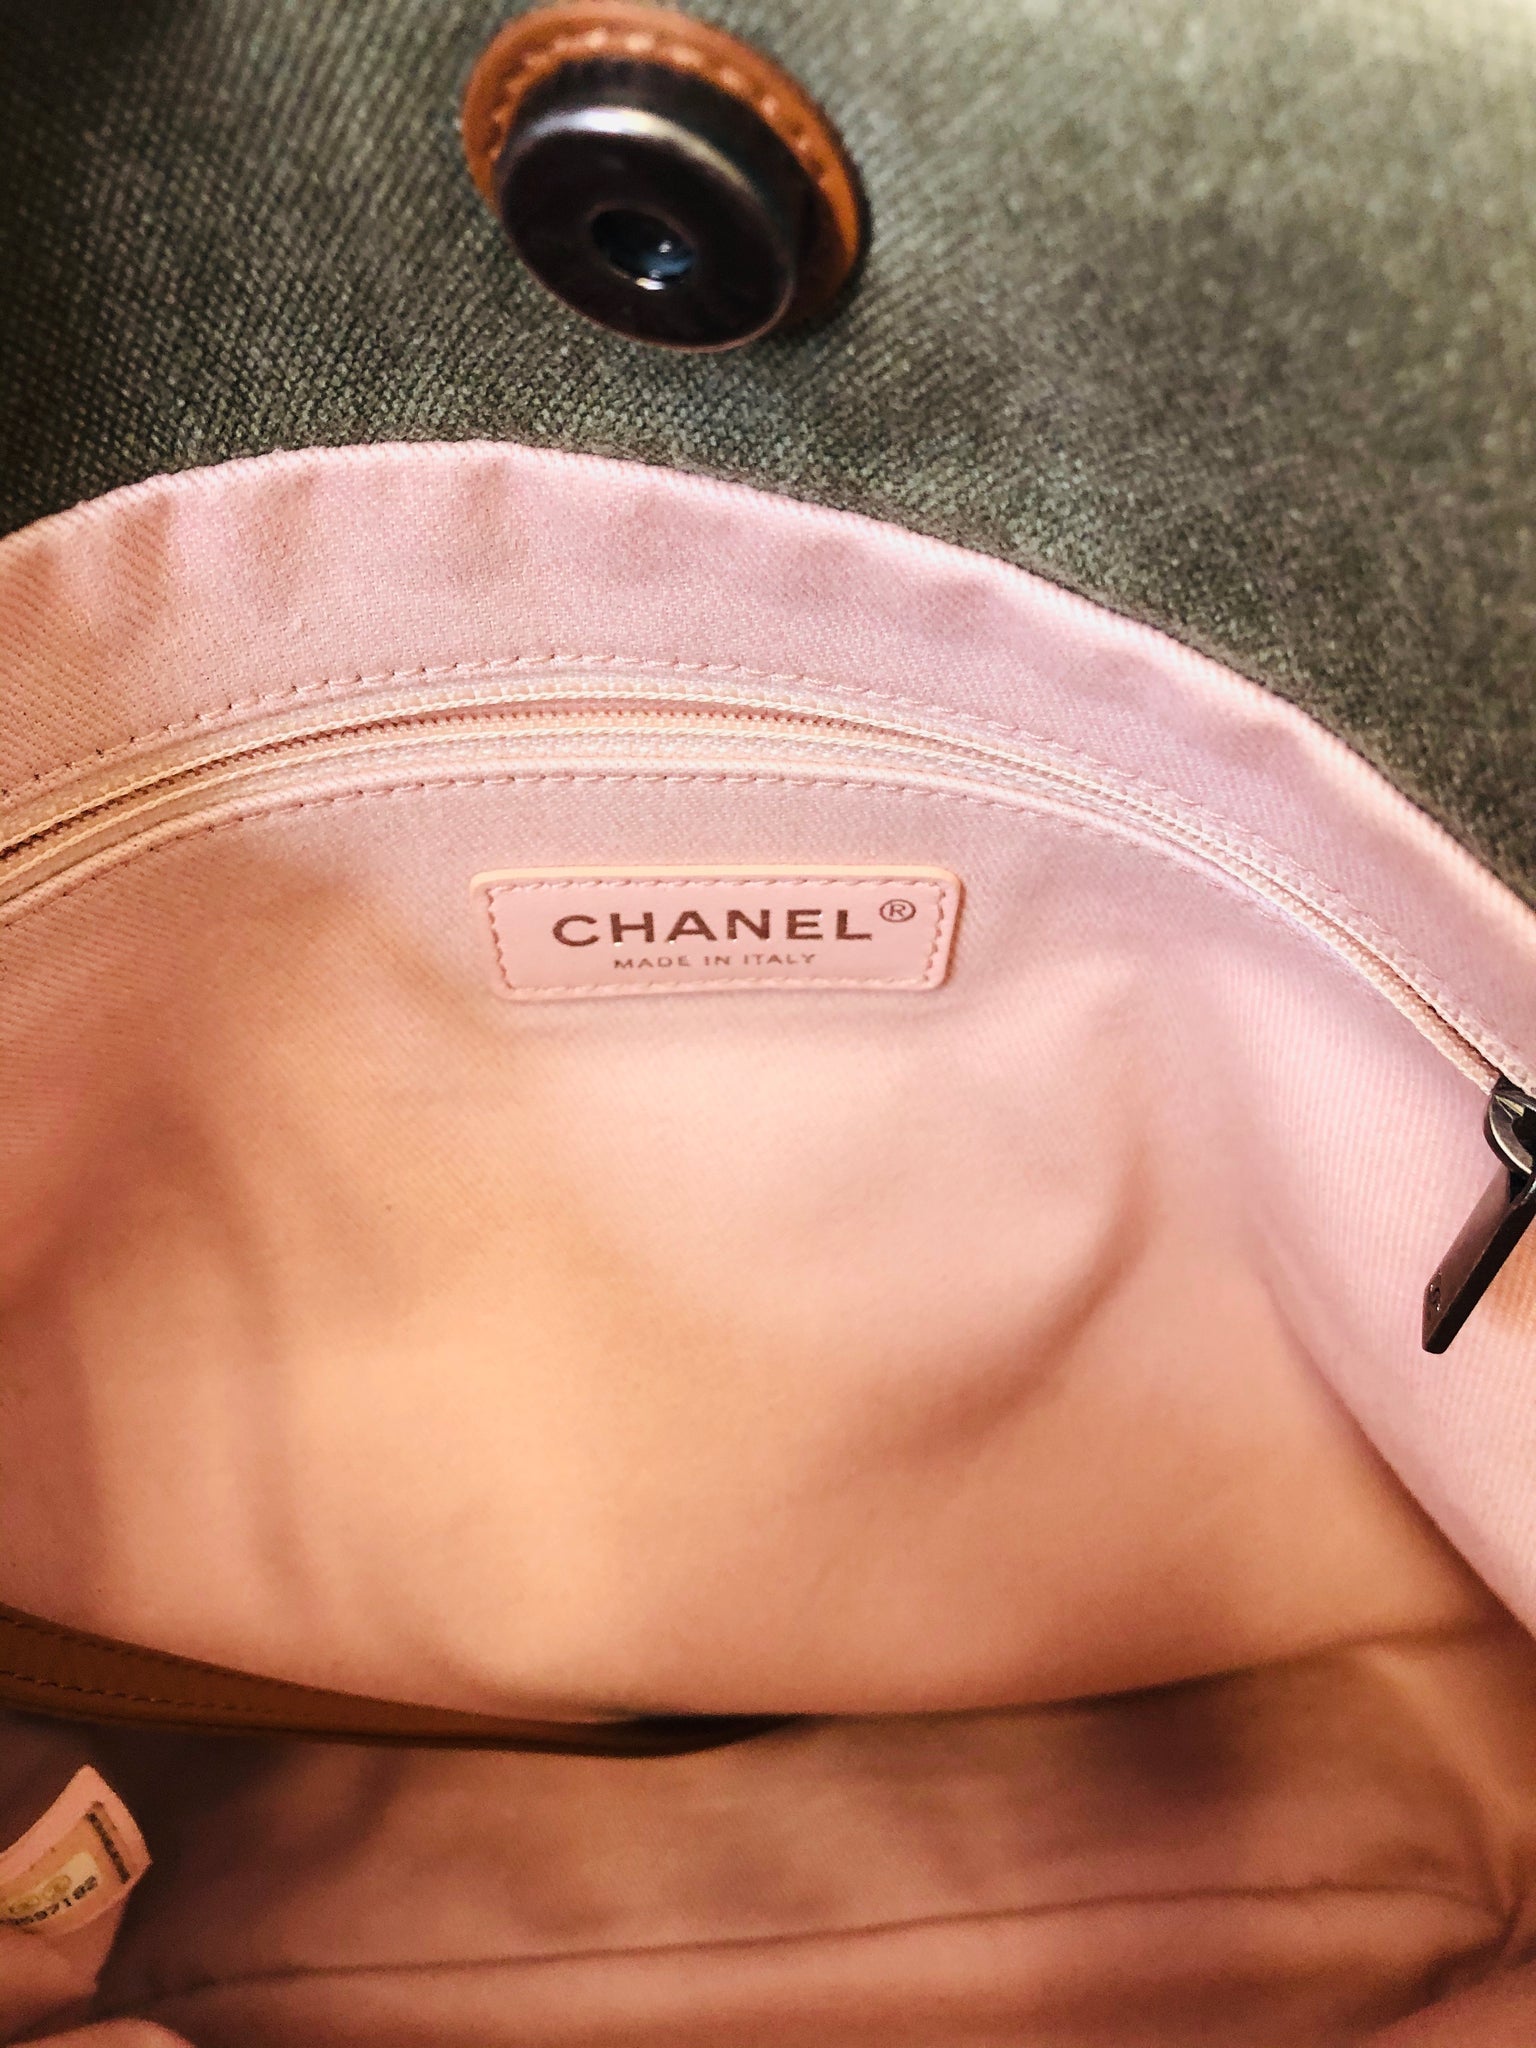 Chanel Deauville Canvas Sequin Tote Bag Dark Gray